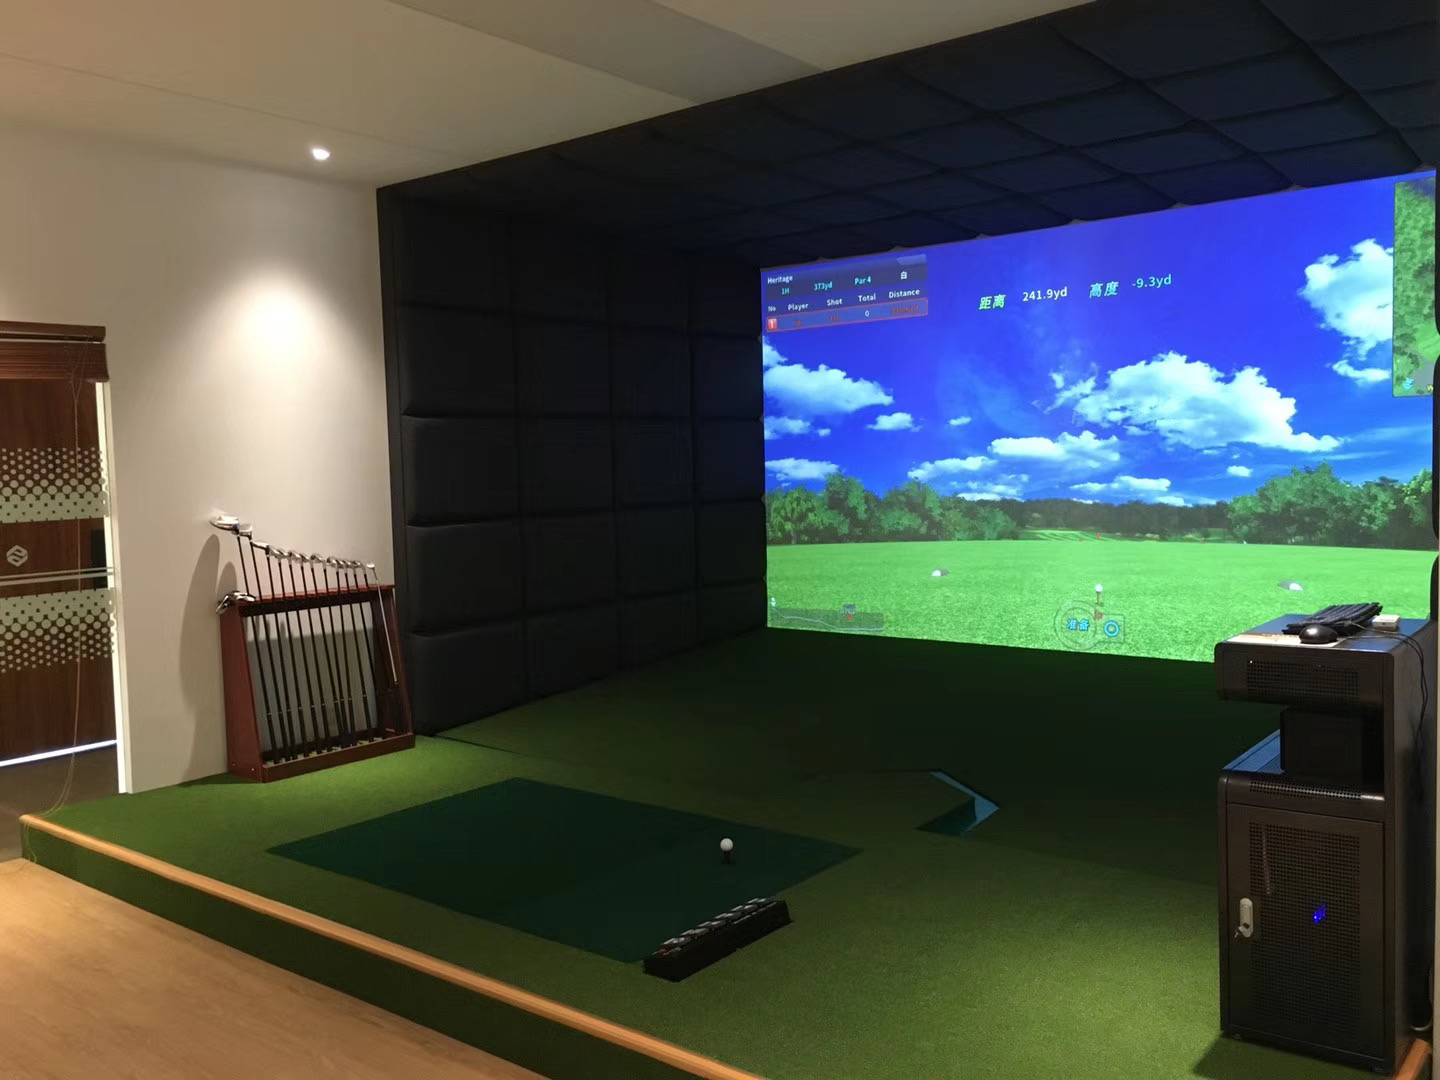 高速摄像室内高尔夫系统优势 让球员更好挥杆体验体现高尔夫球飞行视角高清